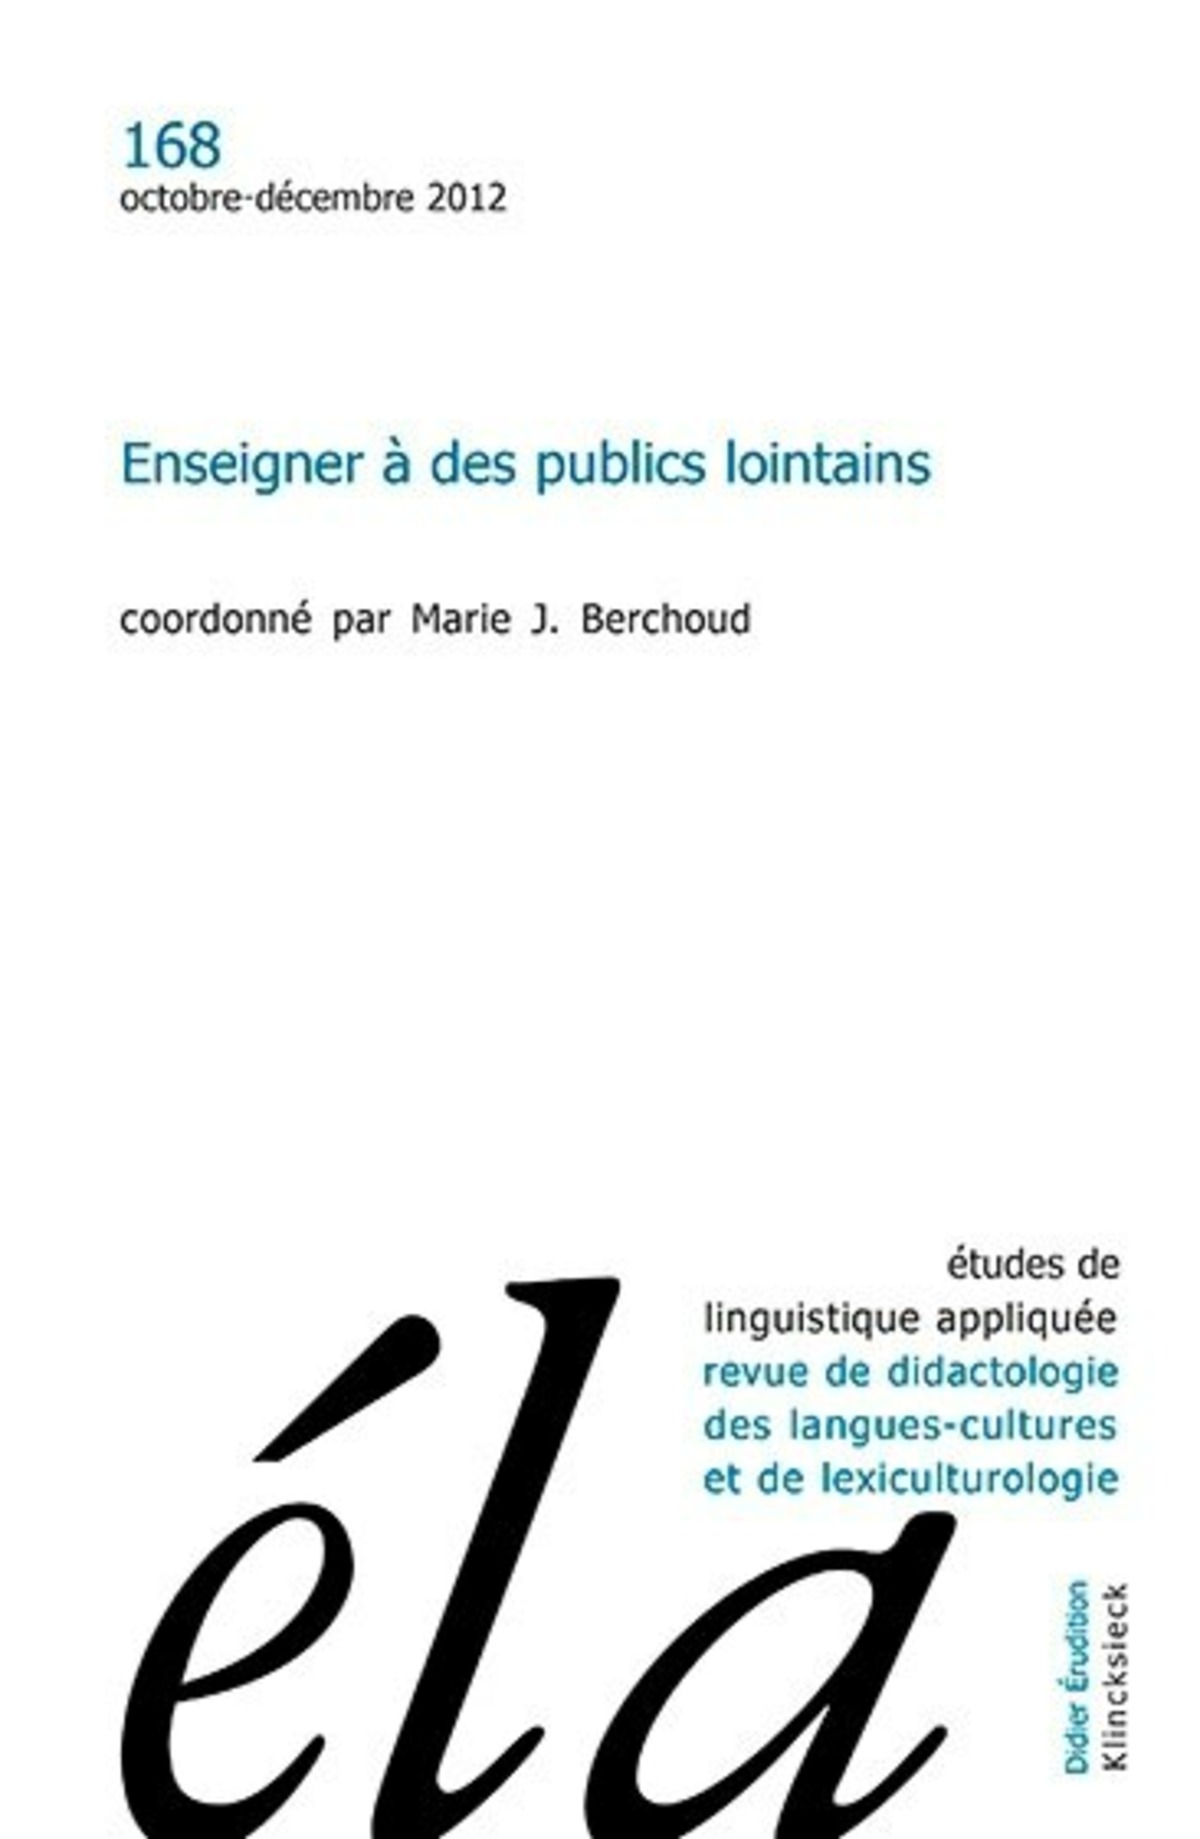 Études de linguistique appliquée n°4/2012